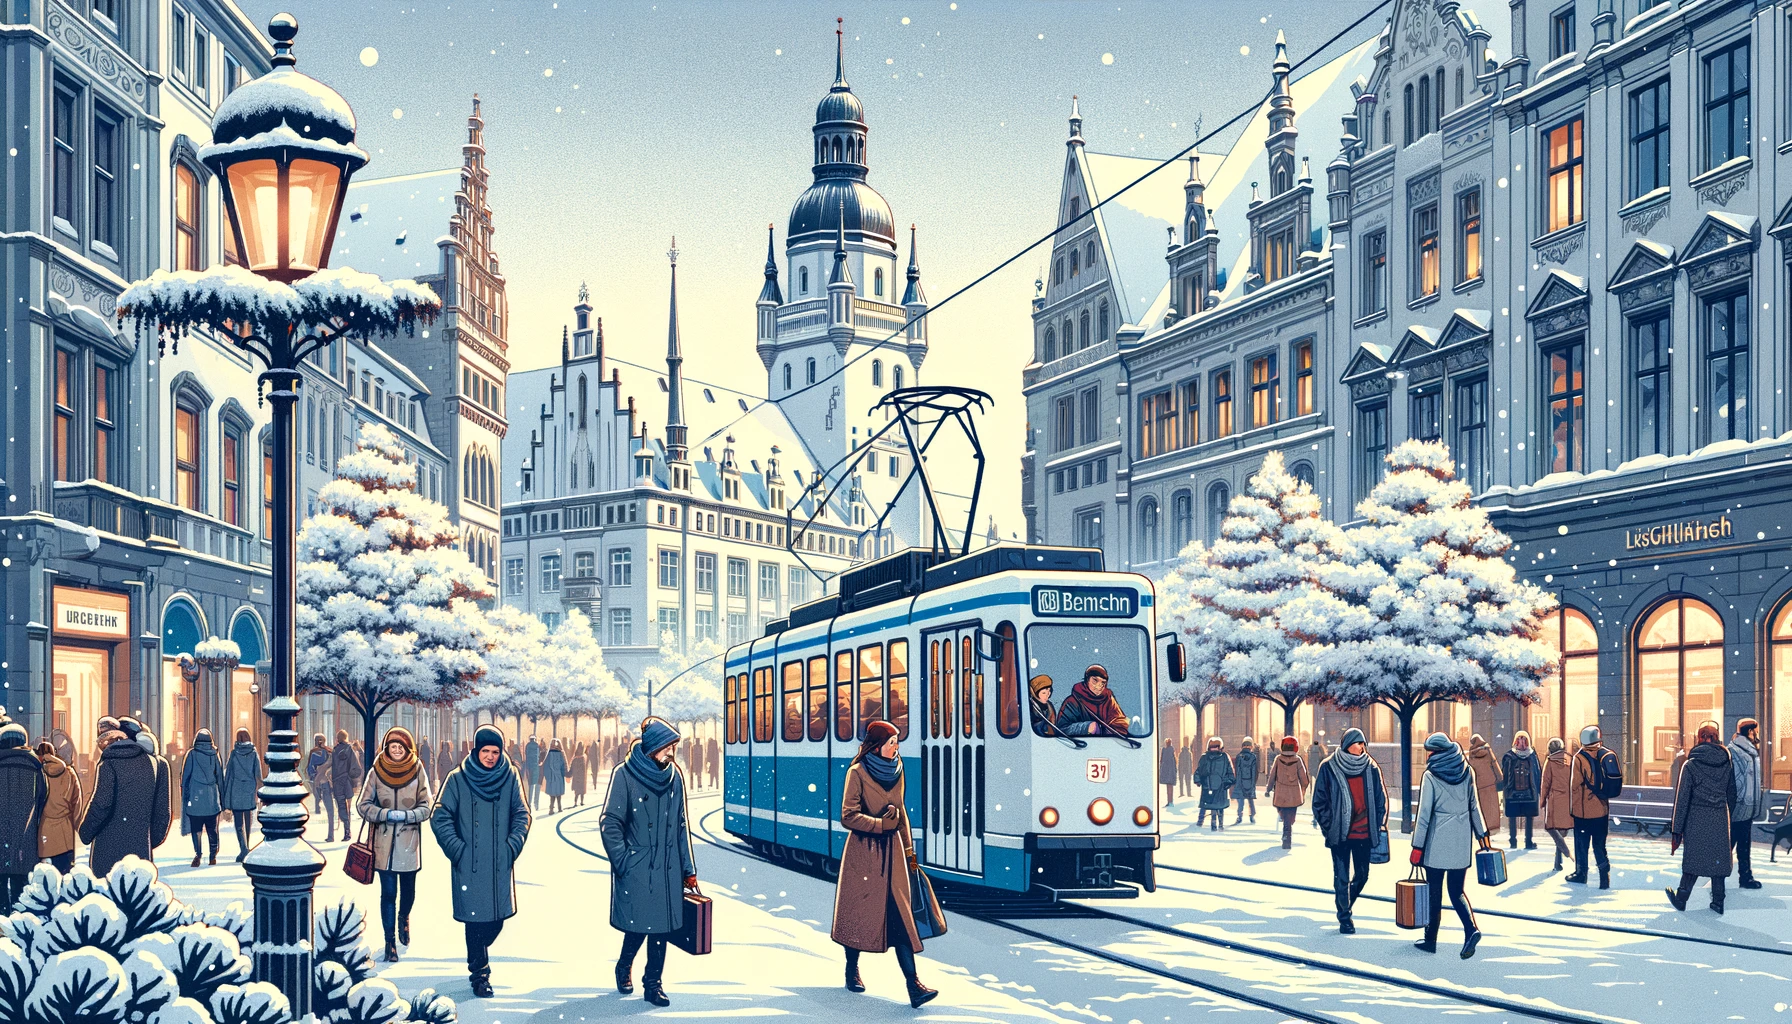 Malowniczy zimowy krajobraz w Lipsku z ludźmi korzystającymi z publicznego transportu